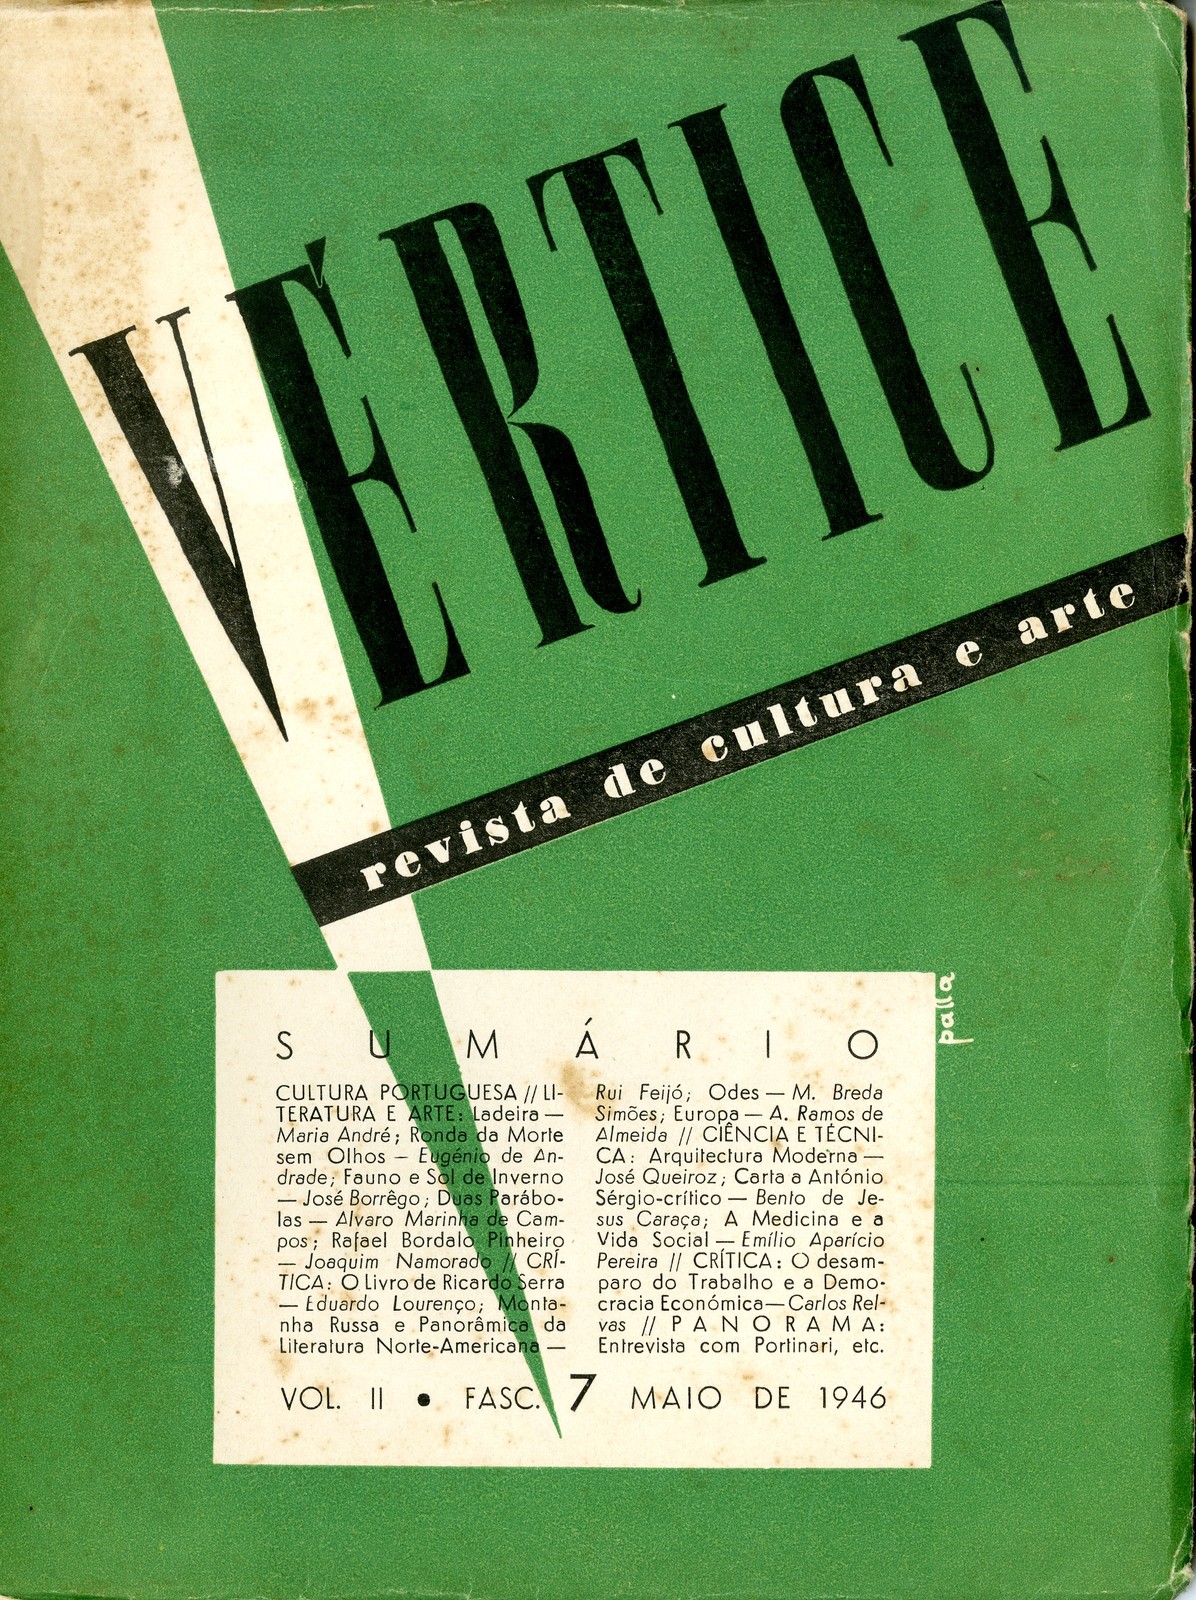 Vértice vol. II, fascículo 7, maio de 1946, capa de Victor Palla